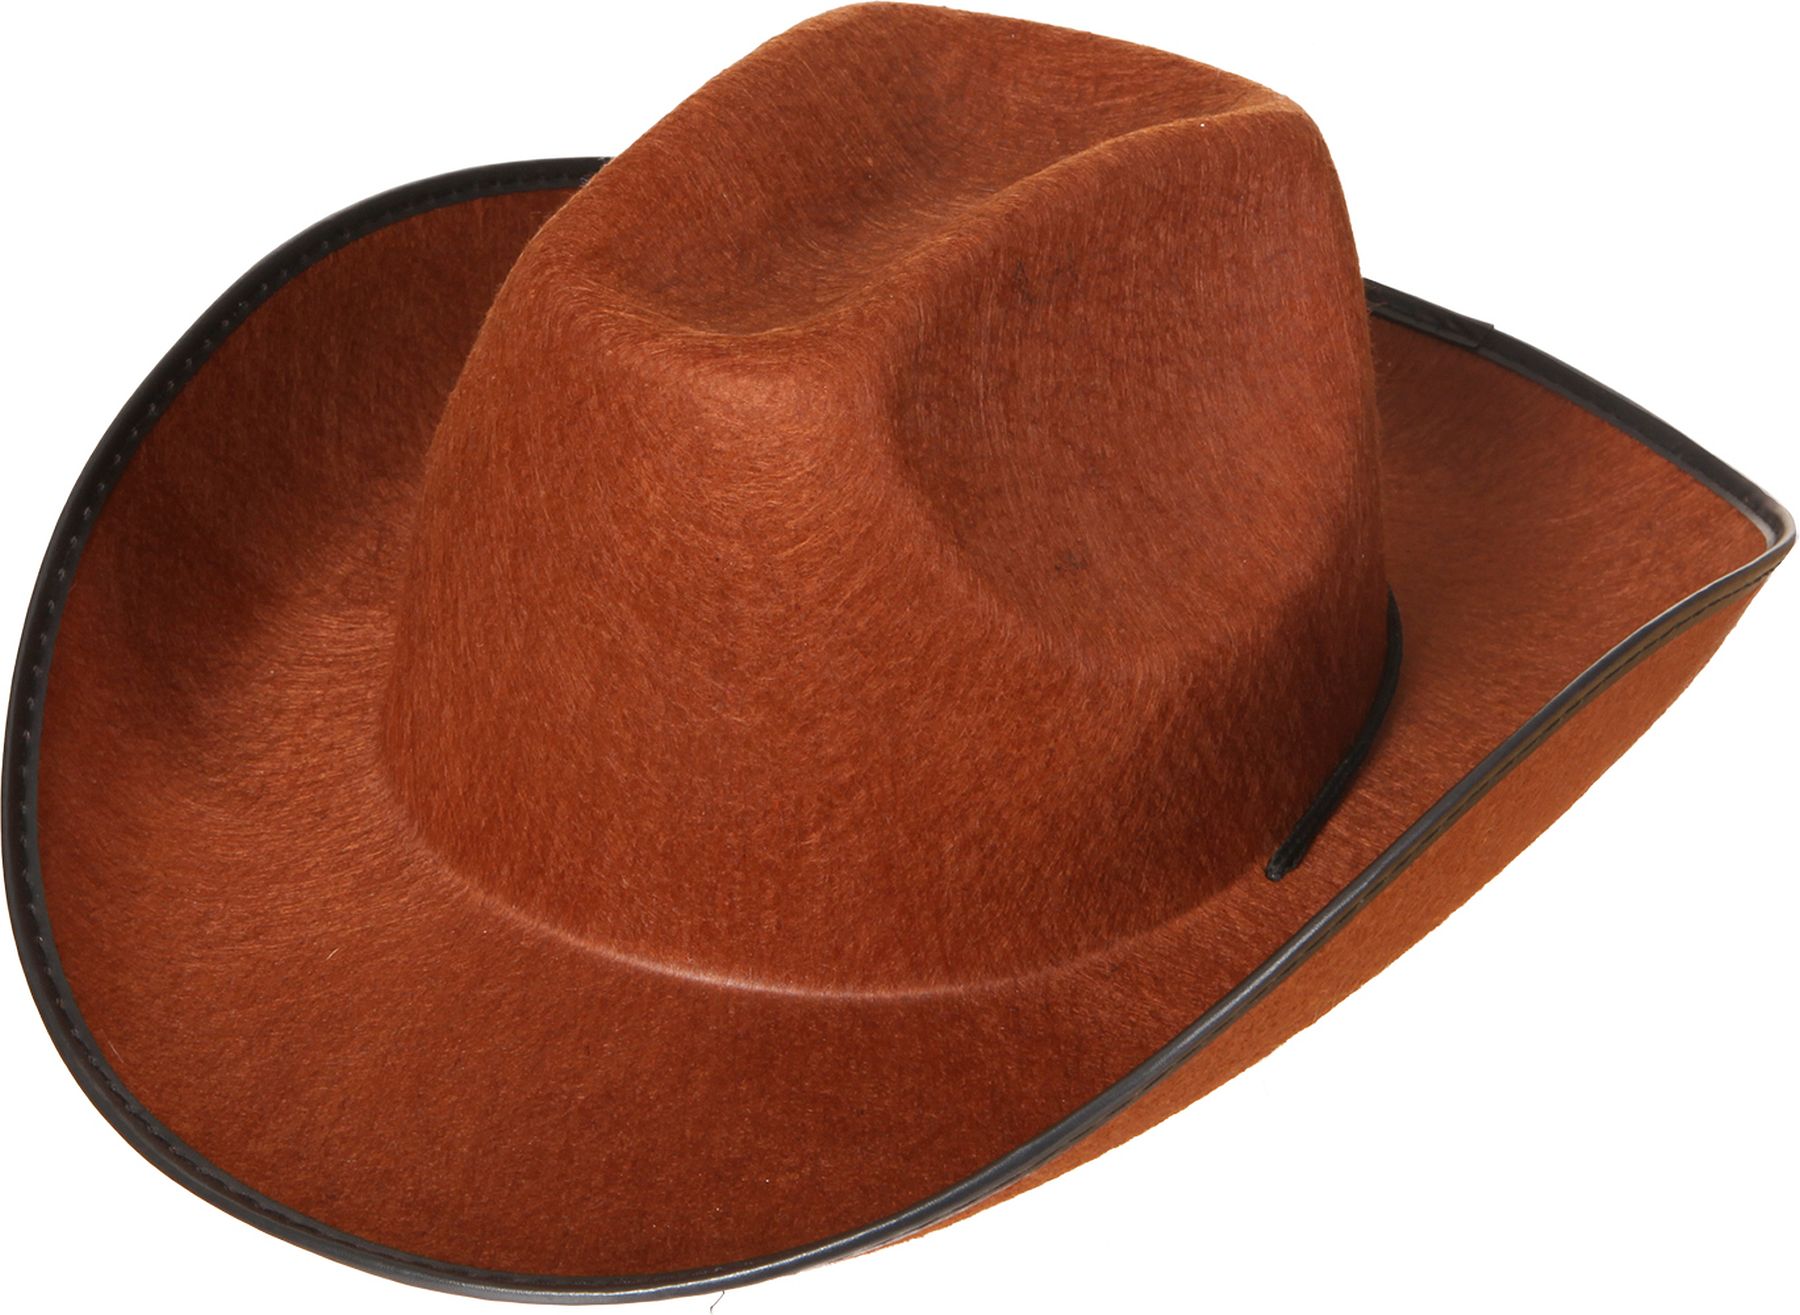 Cowboy hat, brown